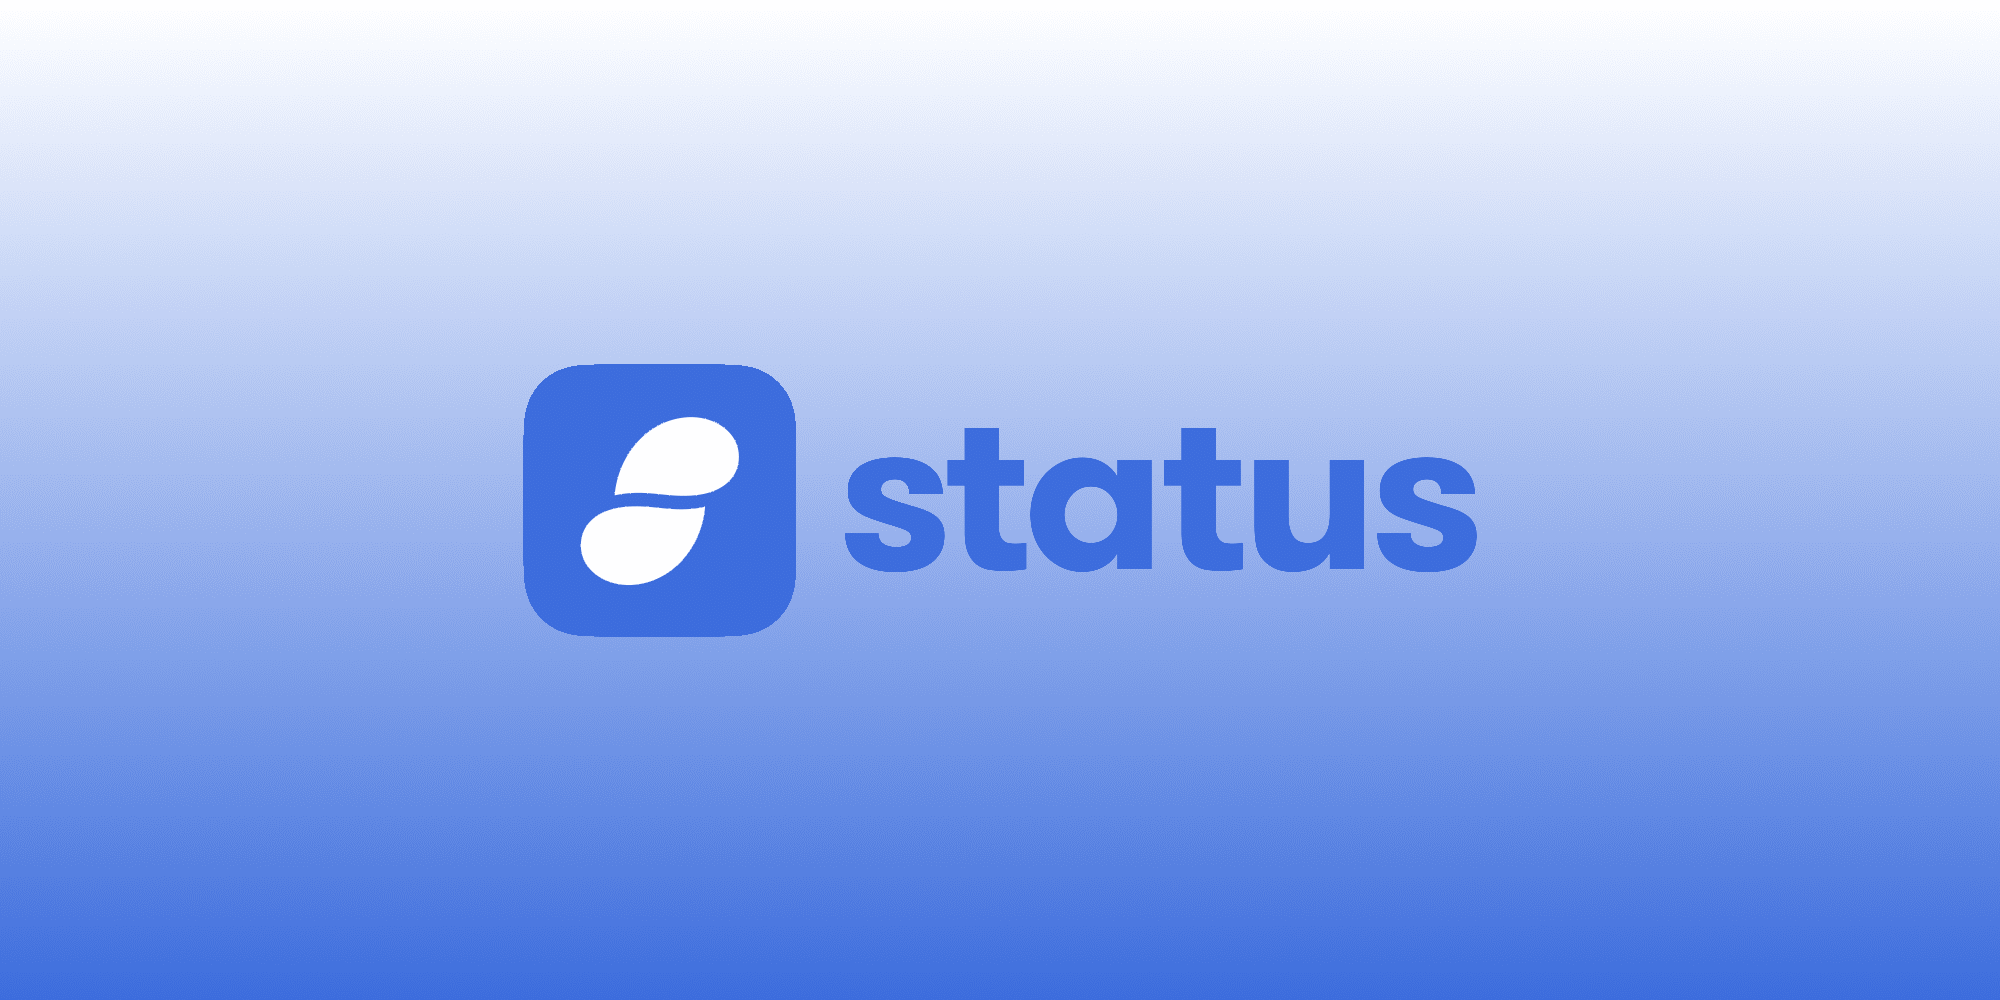 ارز دیجیتال استاتوس snt توکن اختصاصی پلتفرم Status